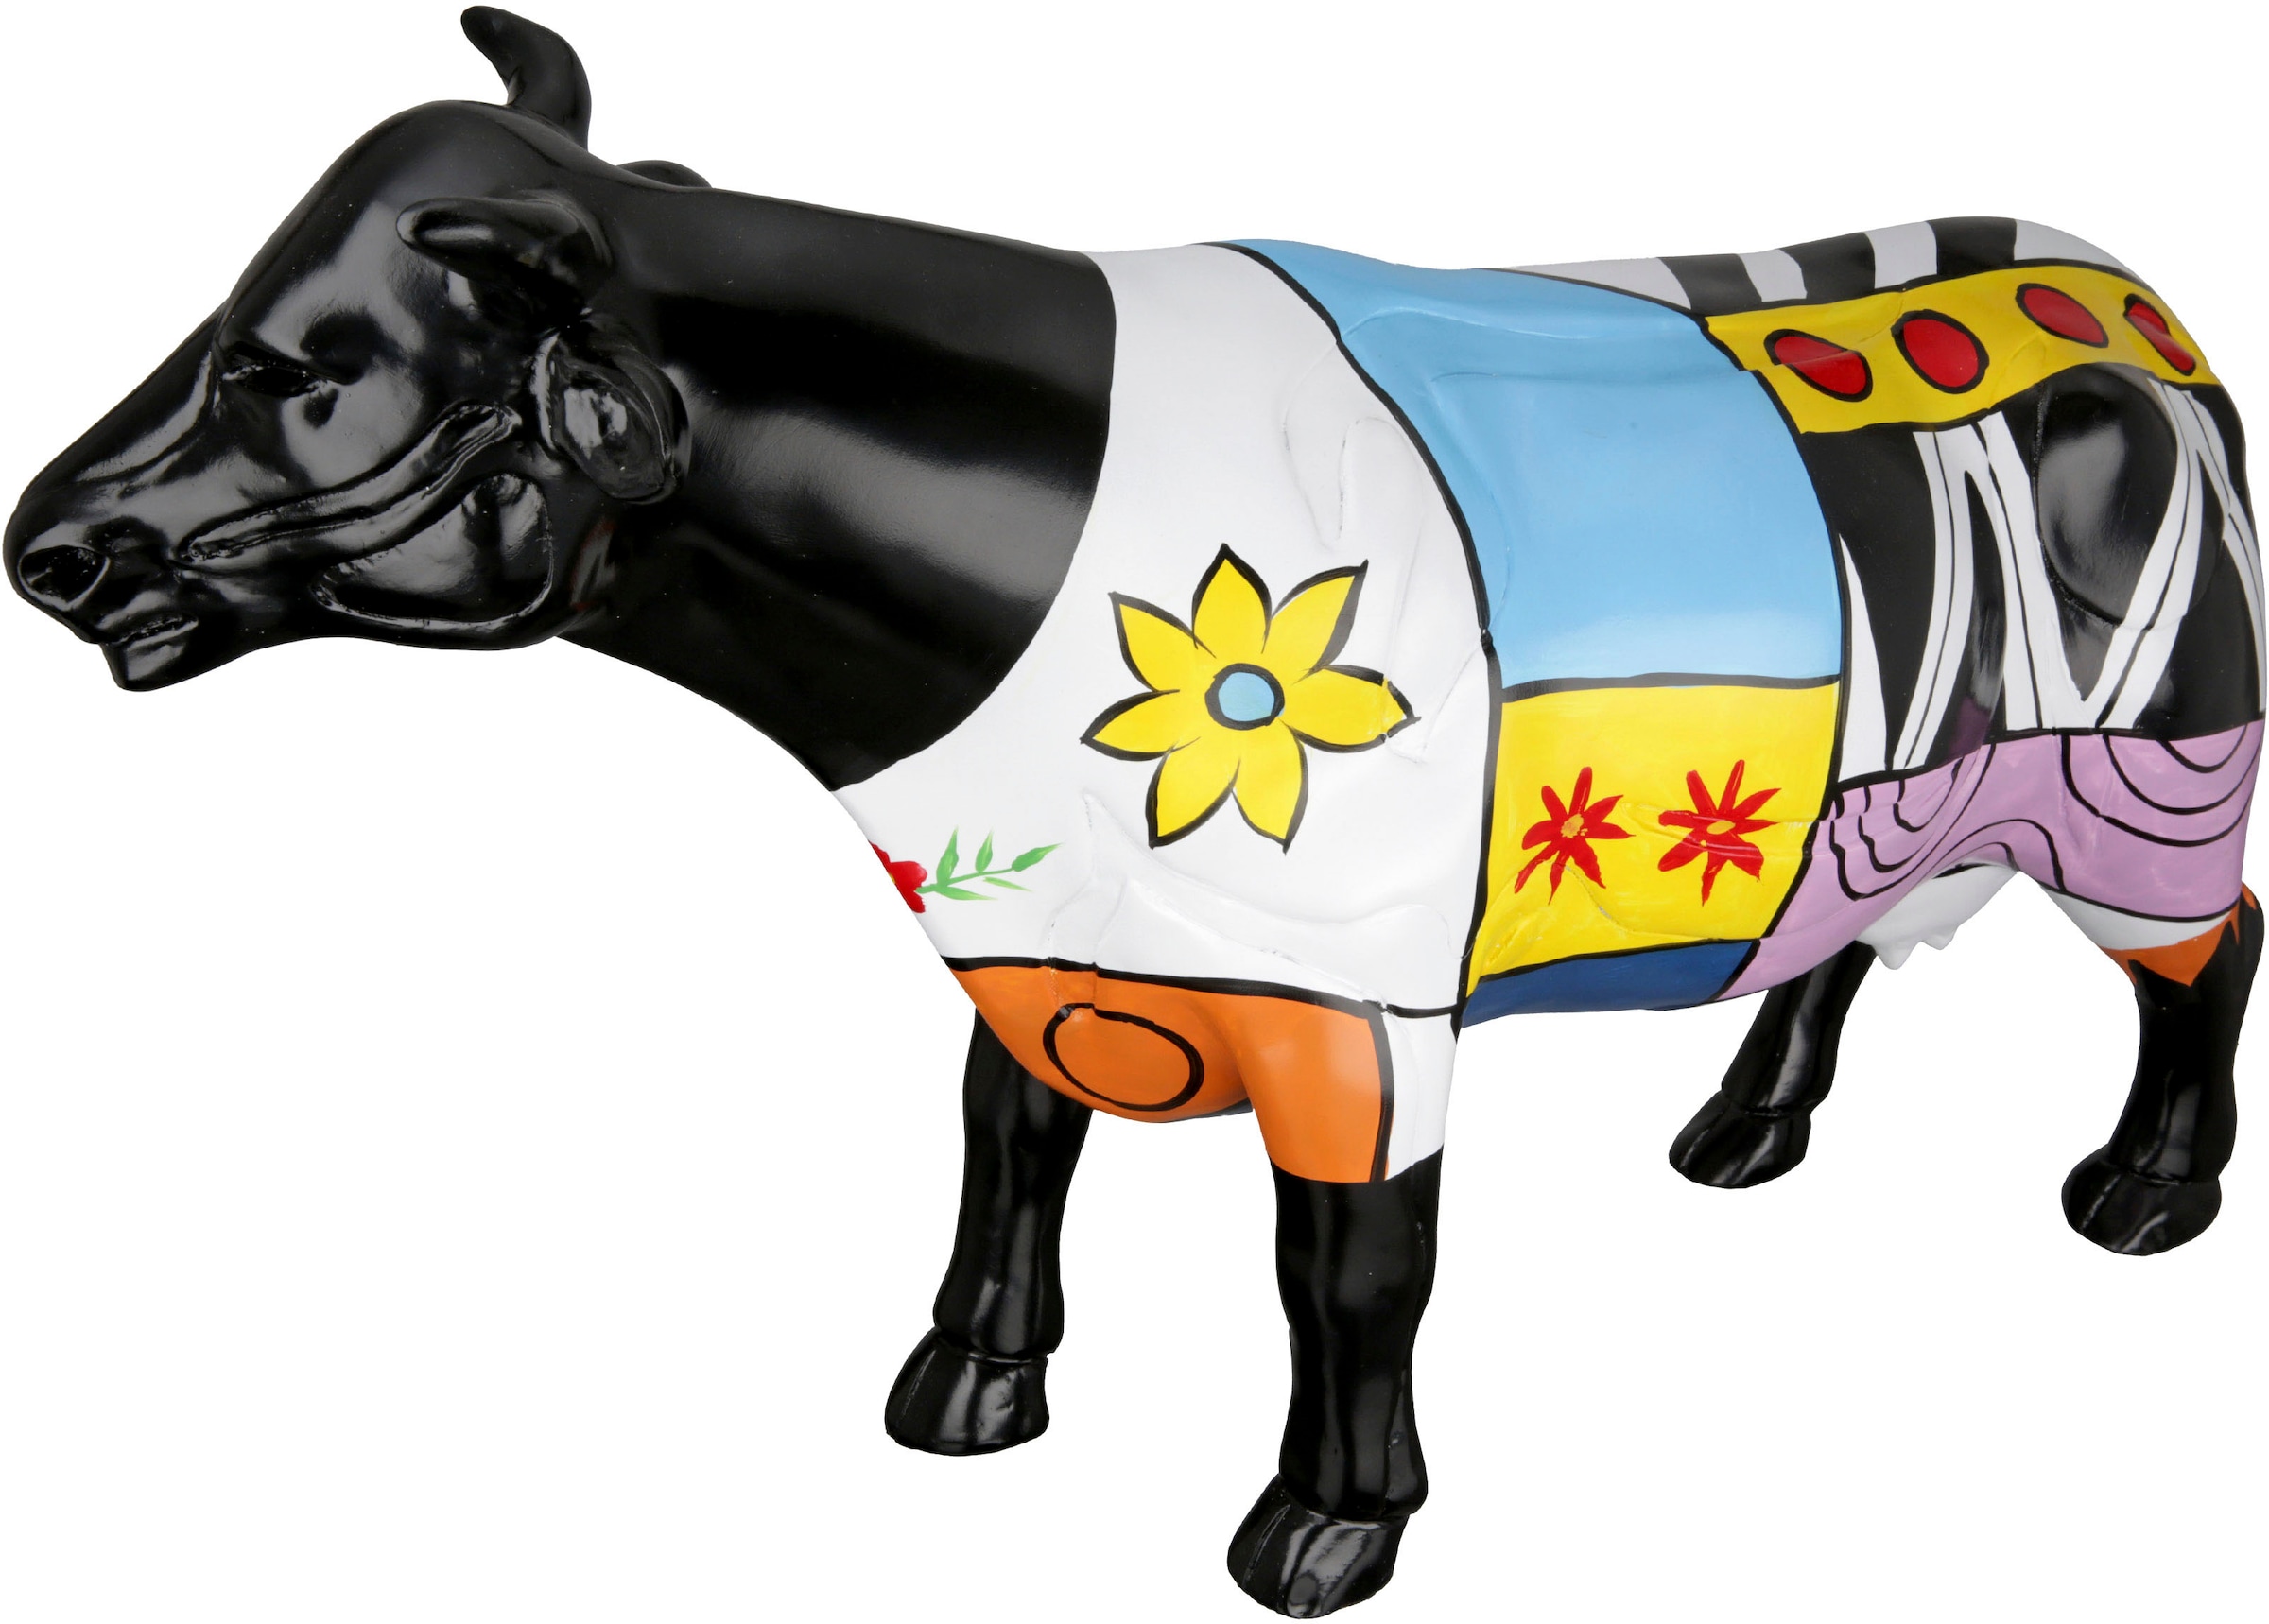 Cow« by Casablanca Tierfigur bei OTTO kaufen »Skulptur Gilde